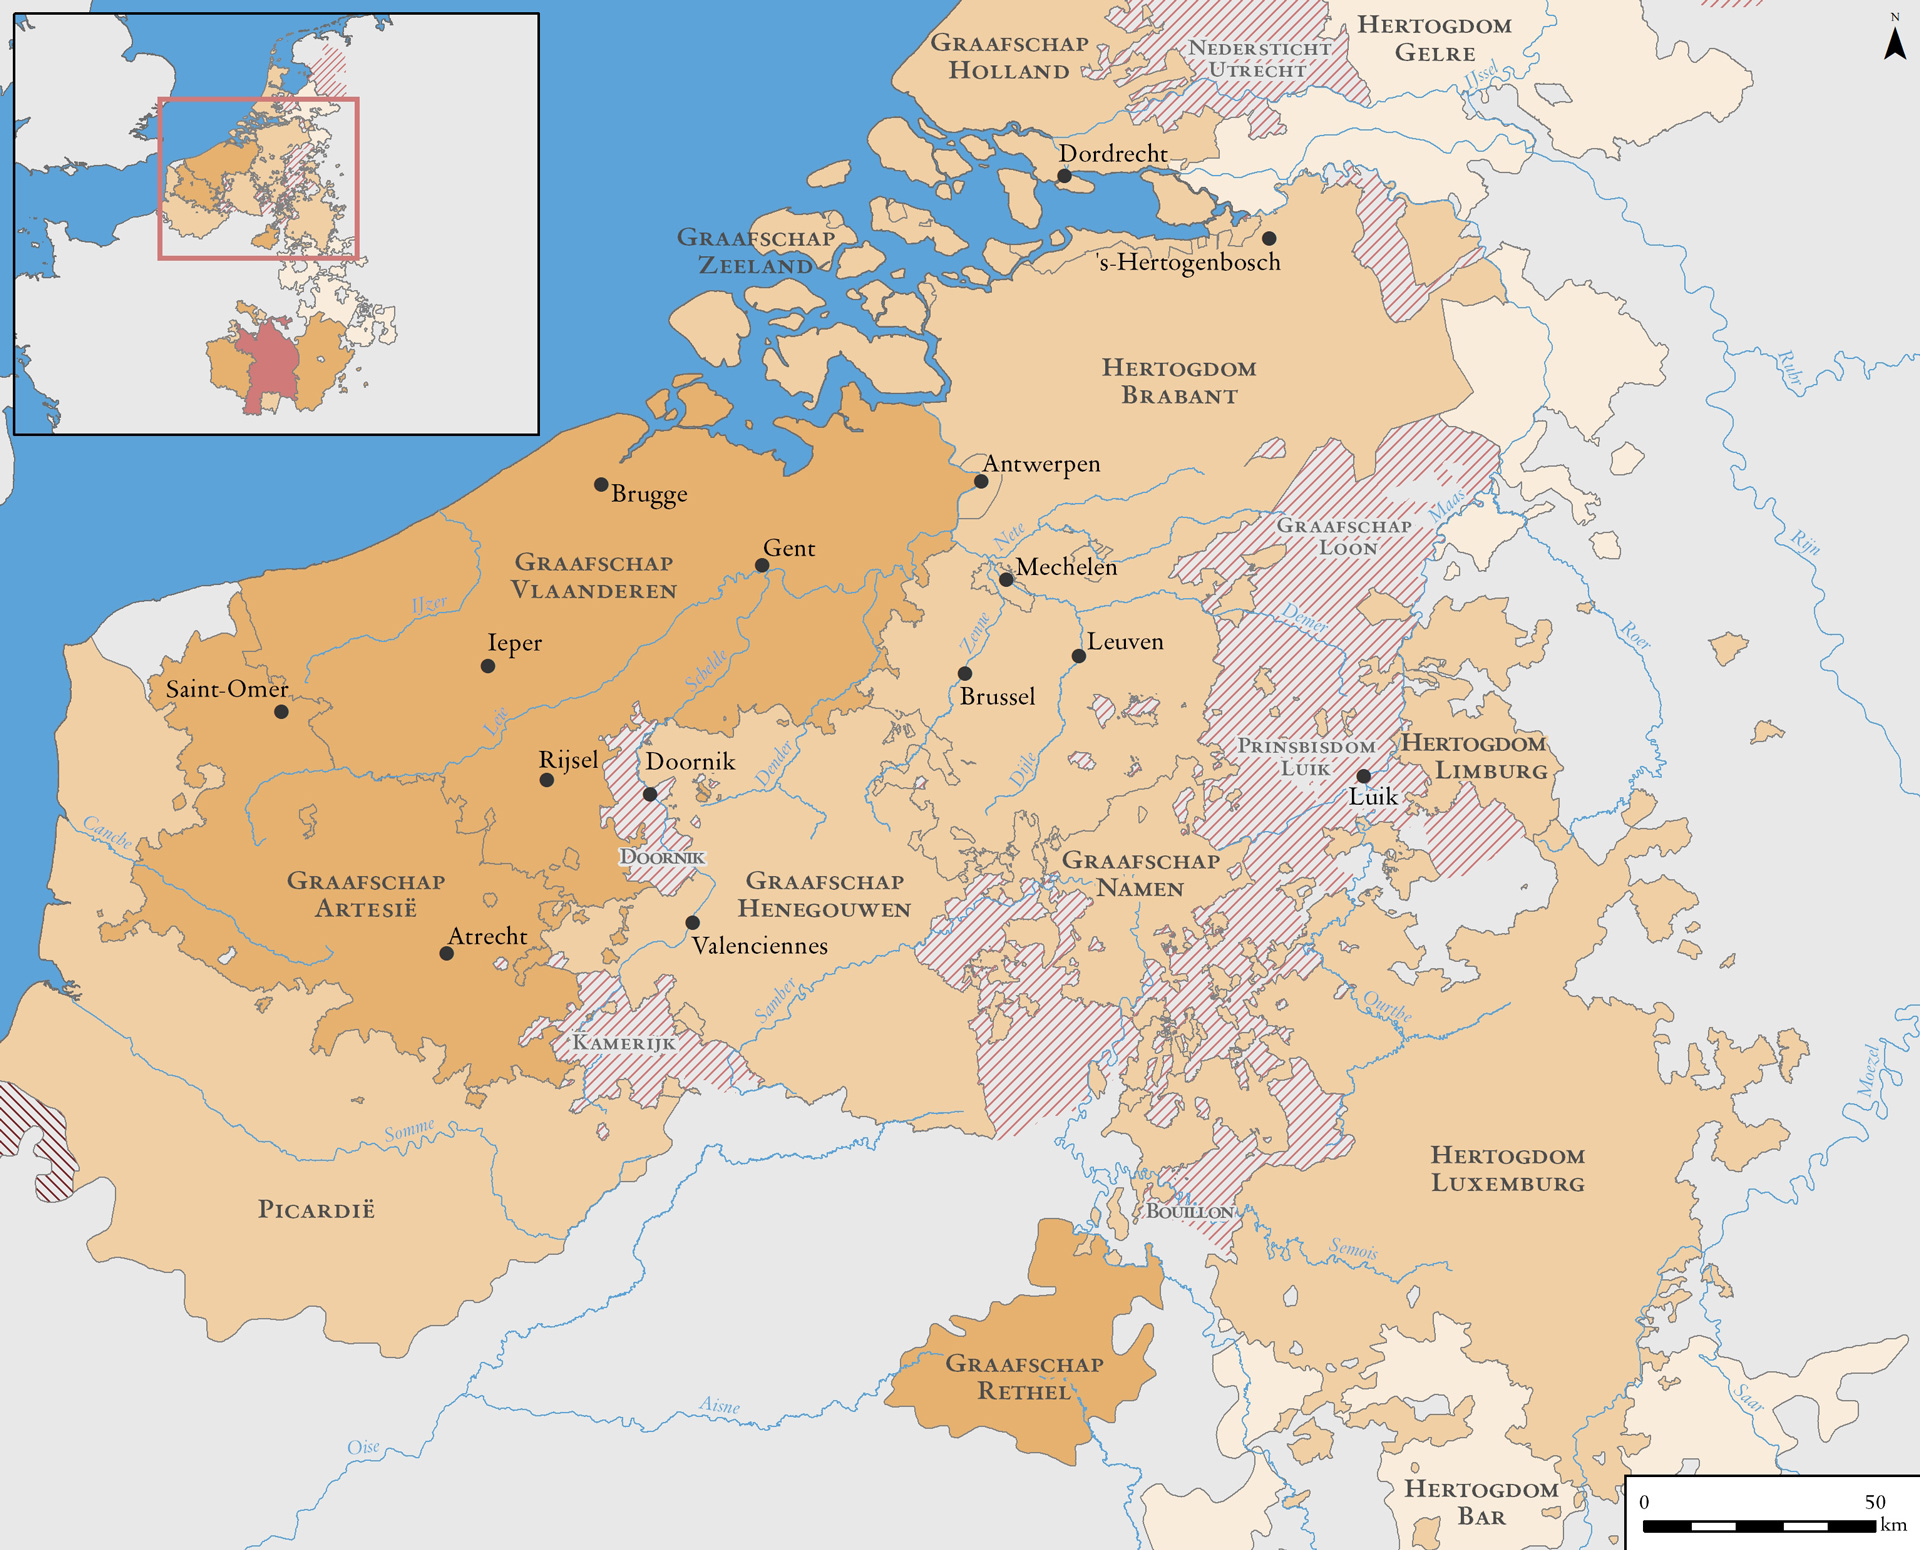 Bourgondische Nederlanden, 14e-15e eeuw